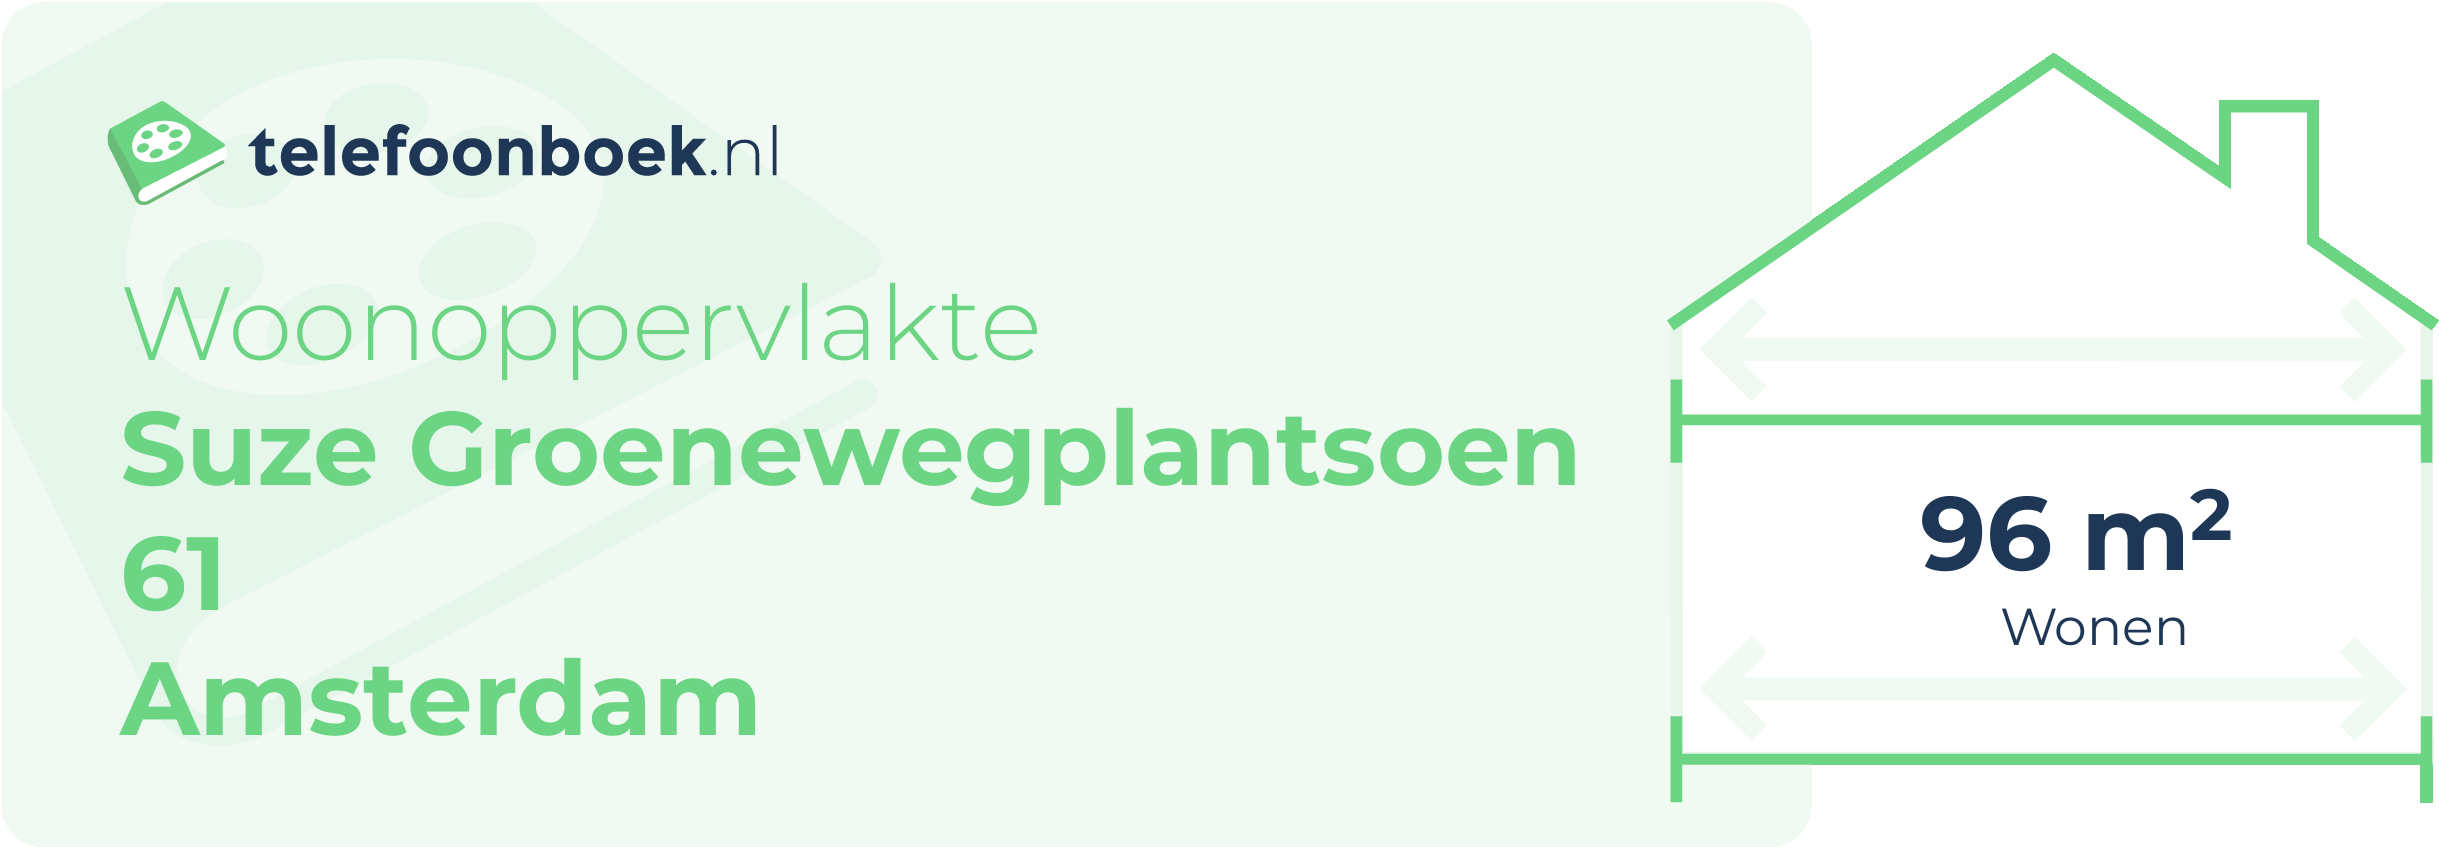 Woonoppervlakte Suze Groenewegplantsoen 61 Amsterdam